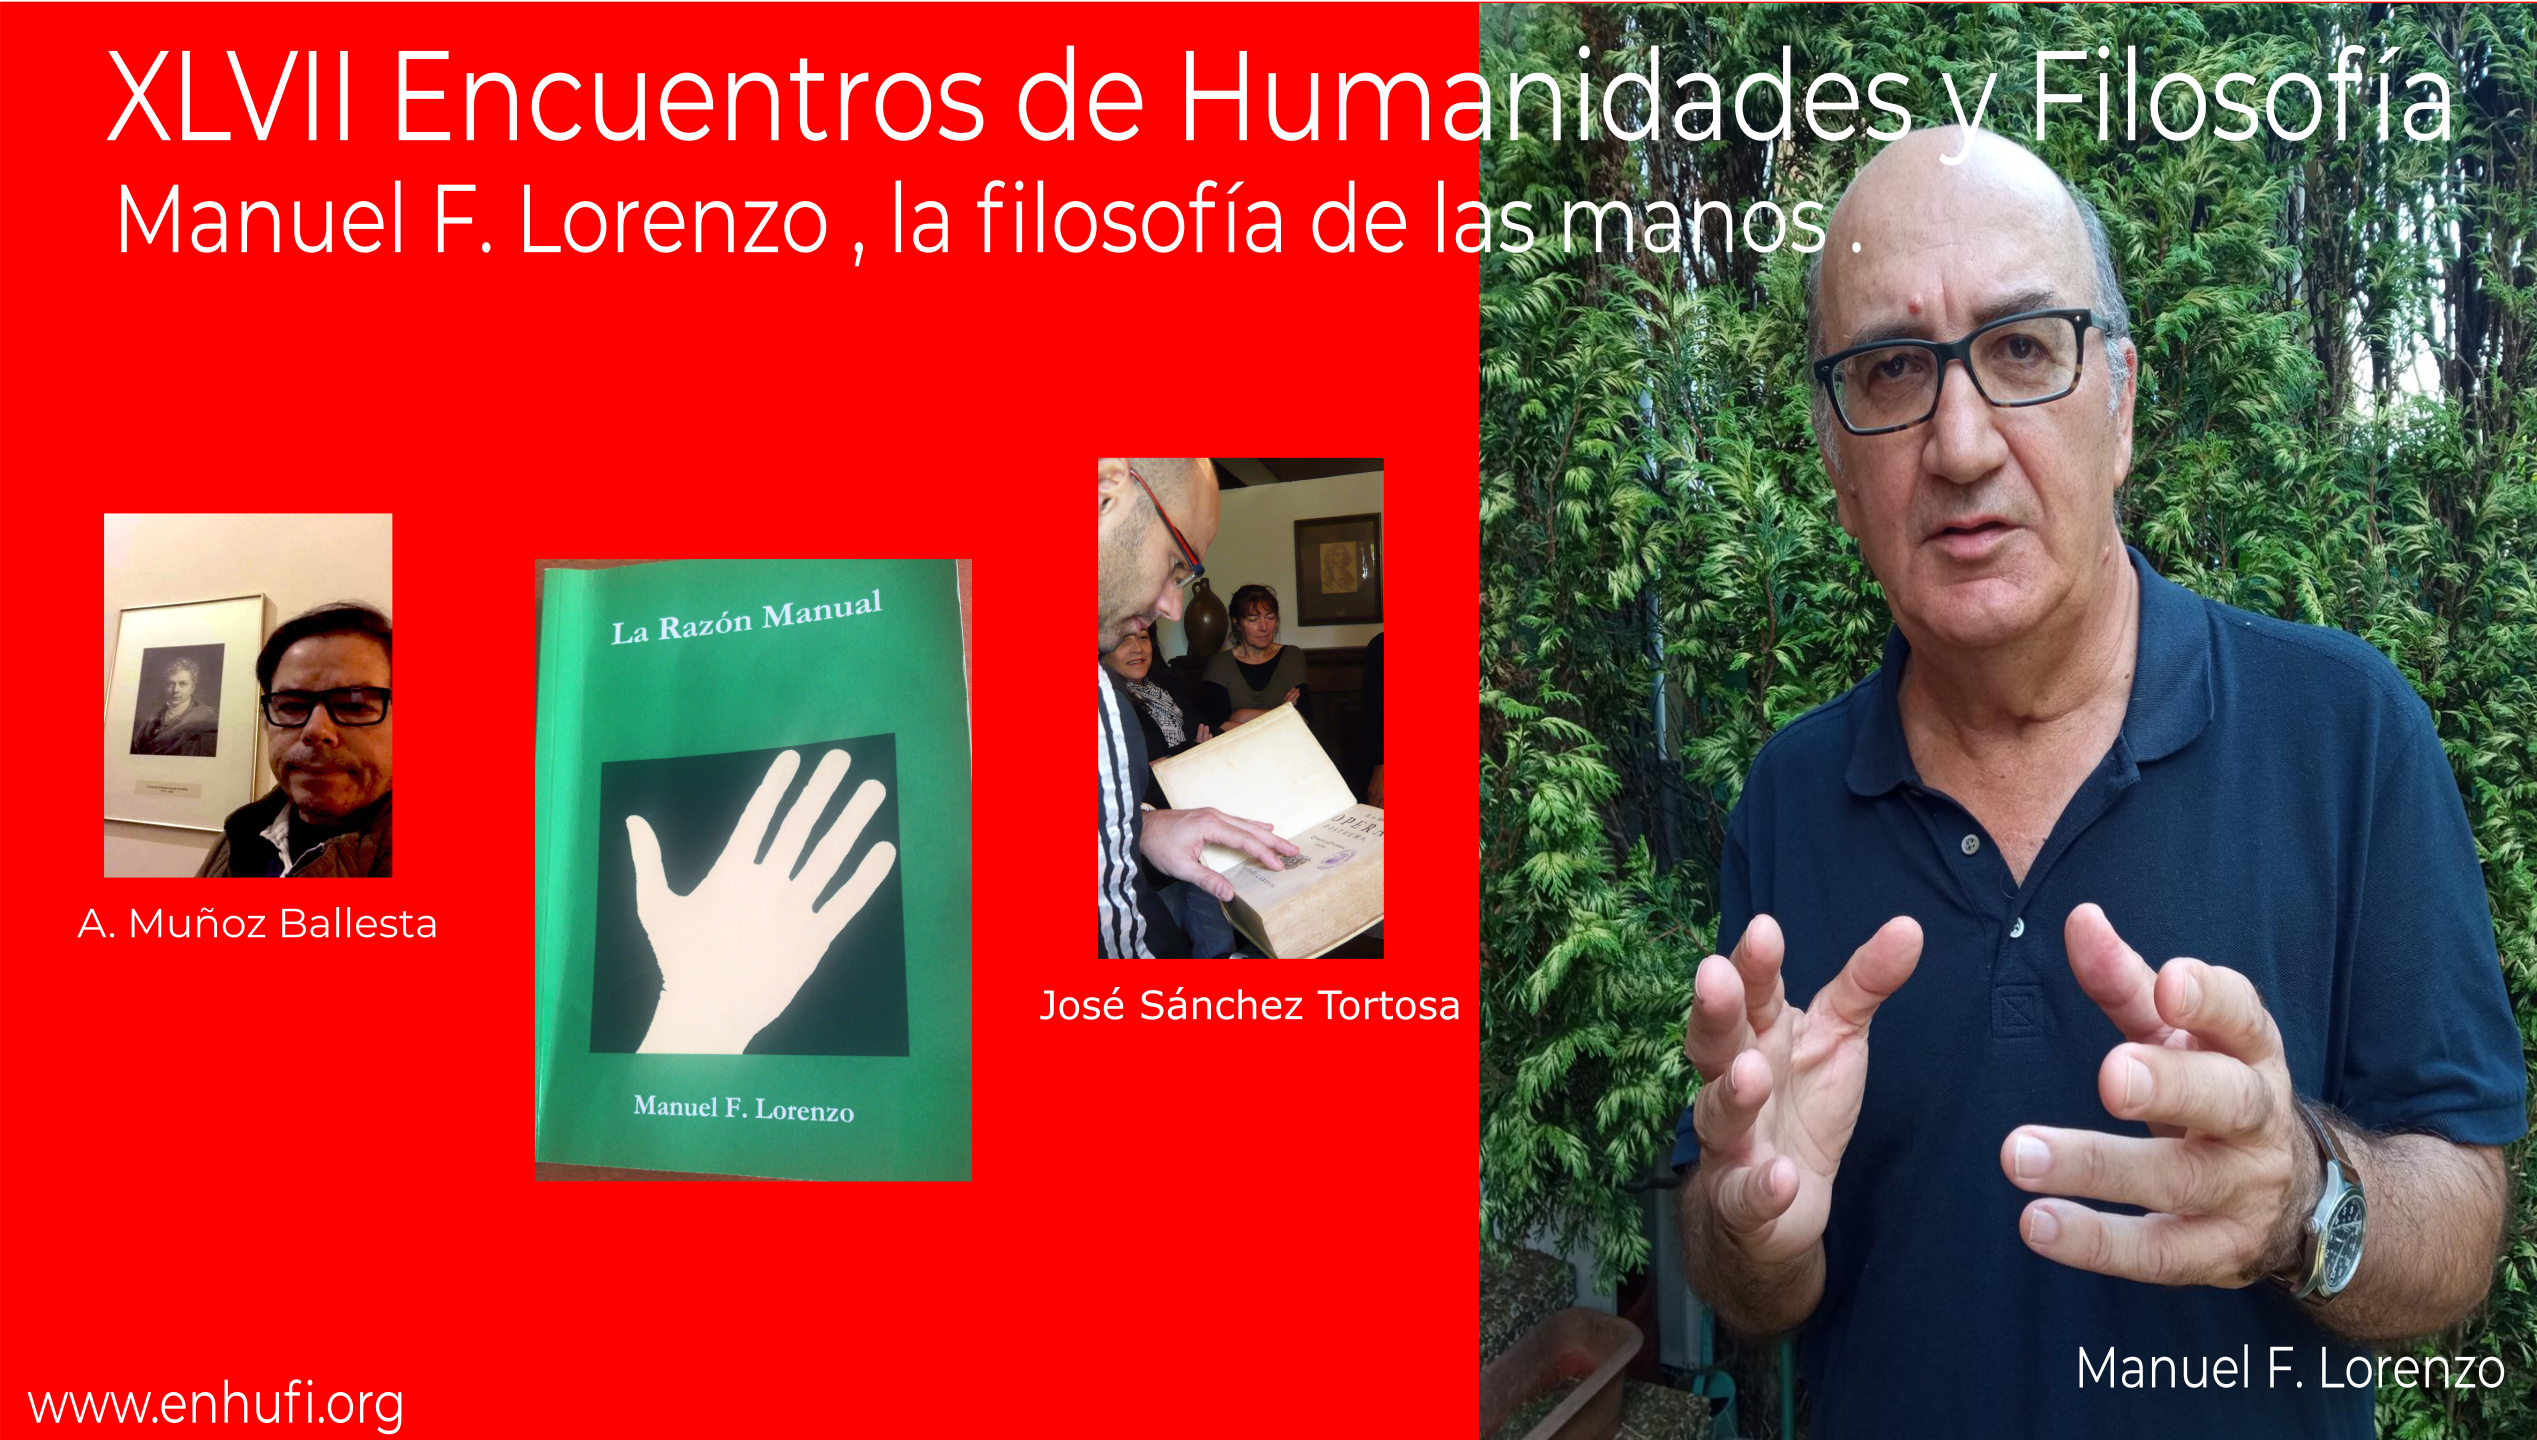 XLVII Encuentros de Humanidades y Filosfofía,  Manuel F.Lorenzo, la filosofía de las manos.